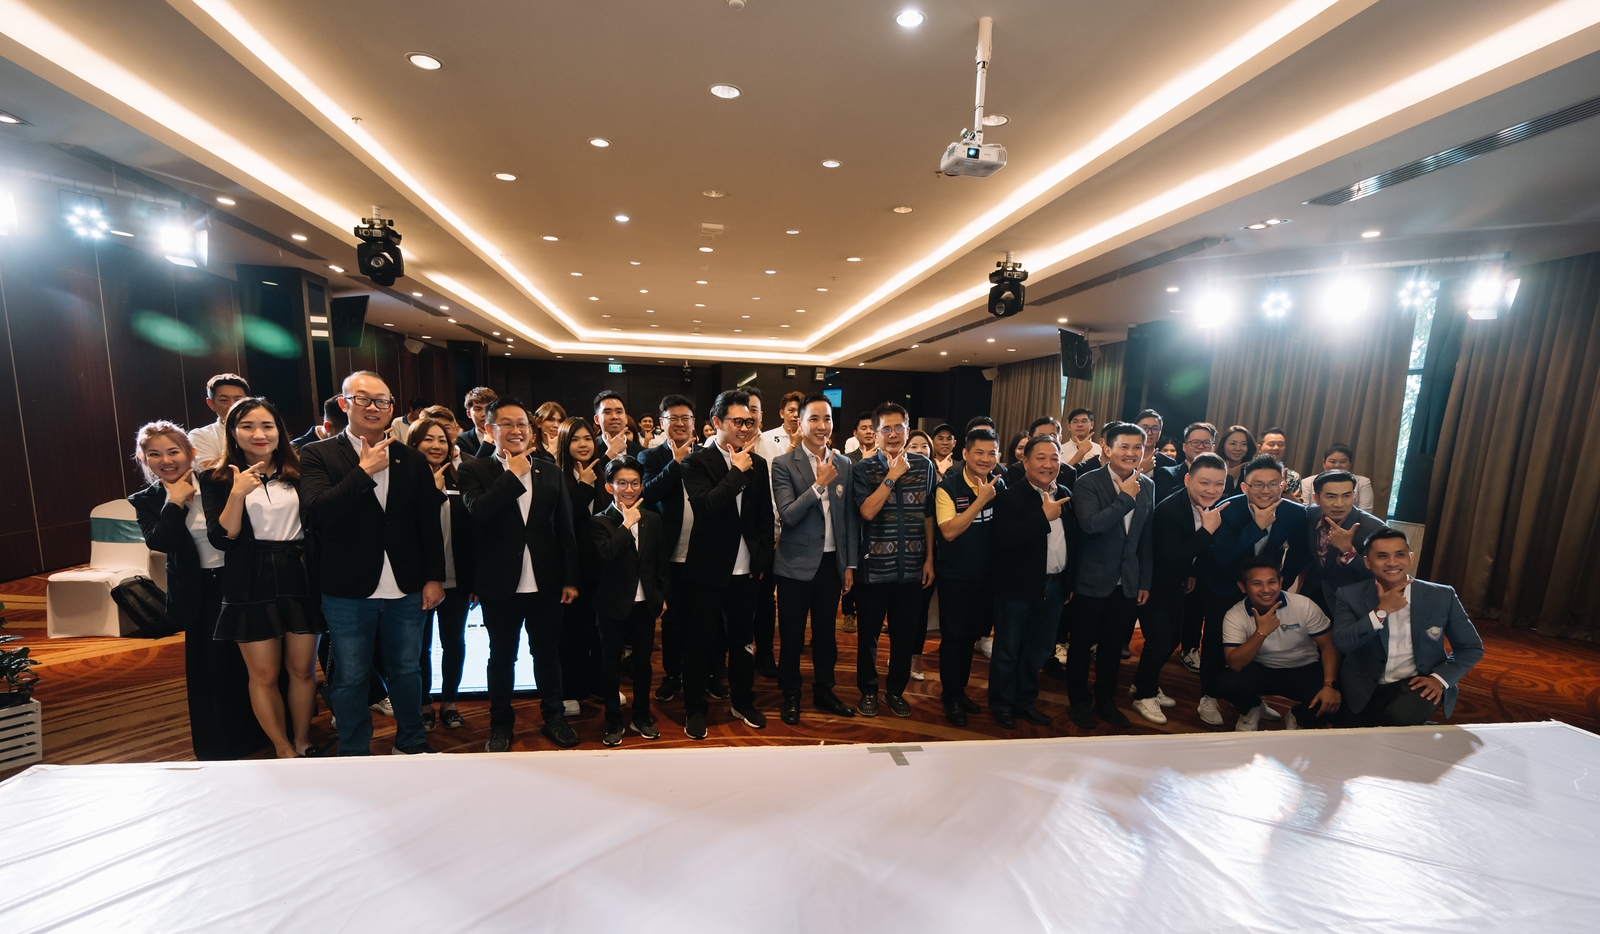 หอการค้าจังหวัดสงขลา และ YEC จังหวัดสงขลา ร่วมต้อนรับและจัดกิจกรรม Networking Penang Chinese Chamber of Commerce Young Enterpreneur Section (PCCC YES) With Songkhla Chamber of Commerce